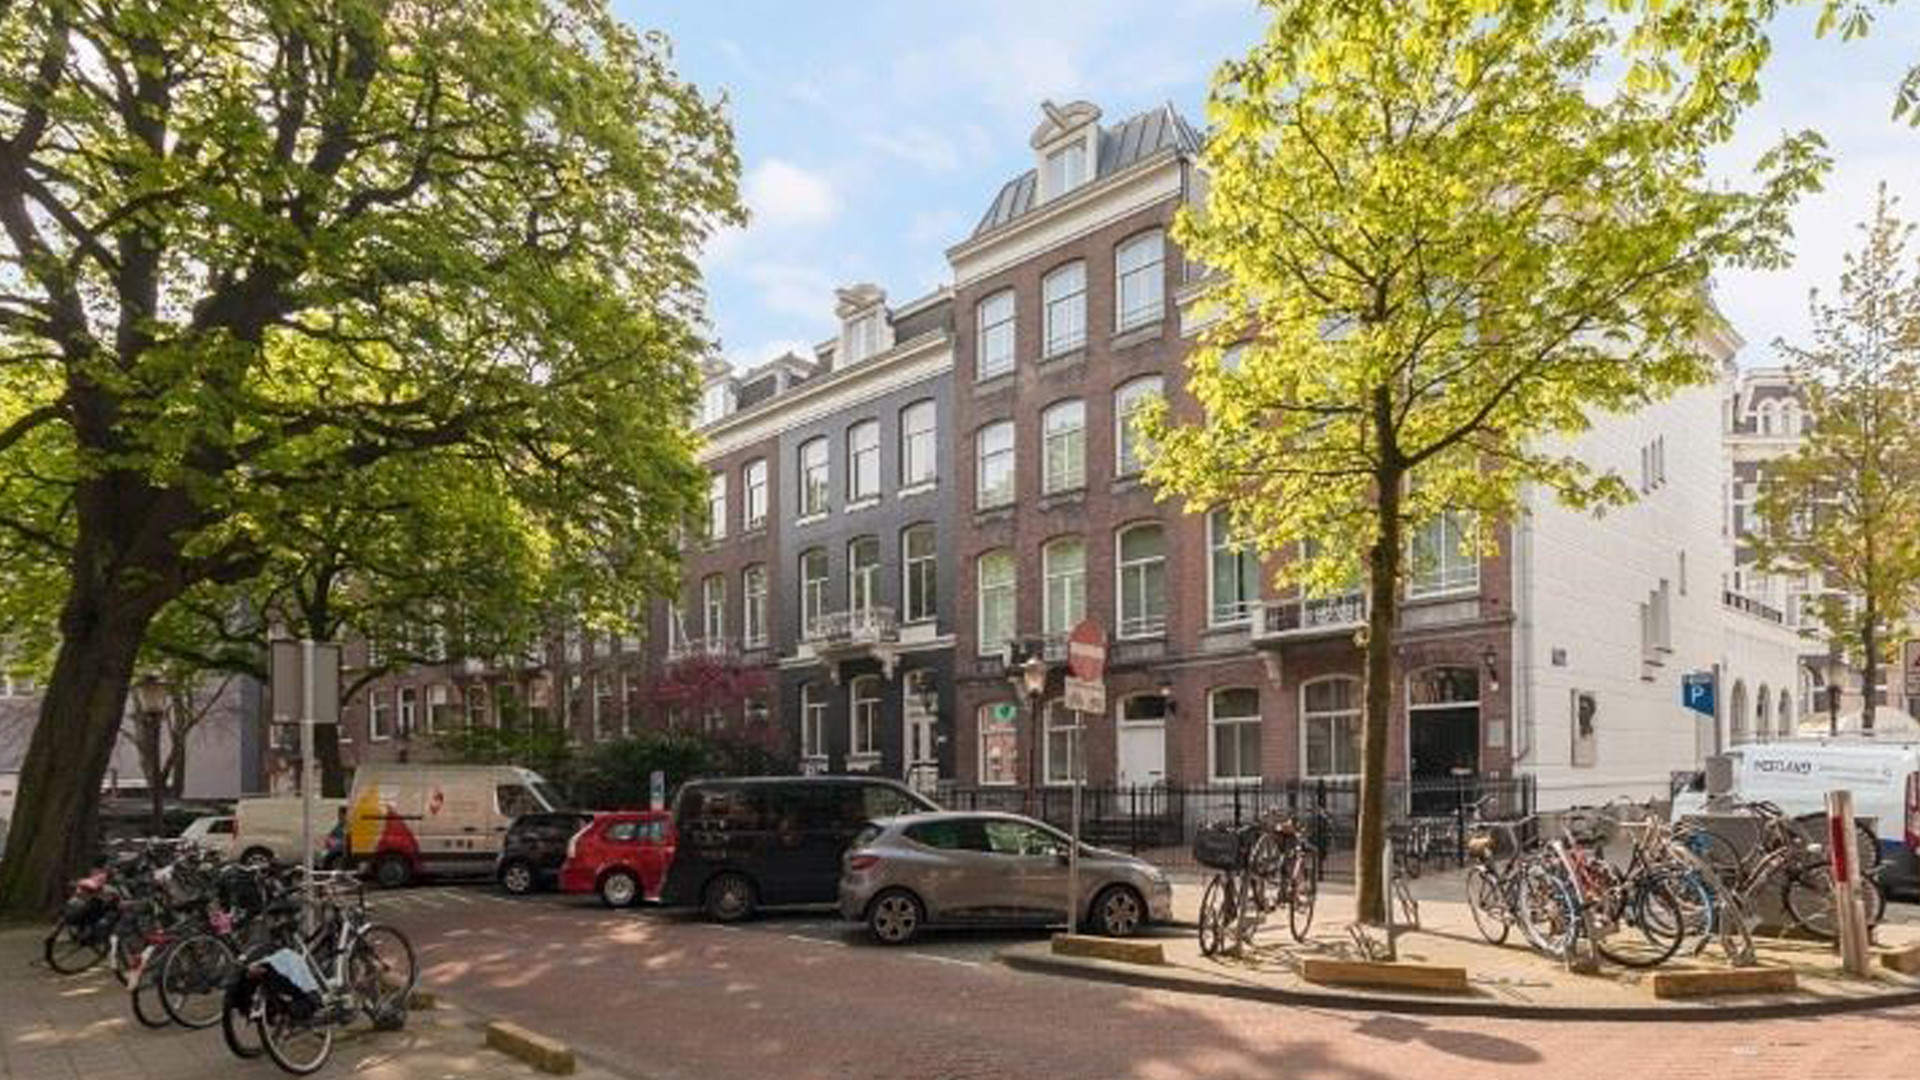 KNVB directeur Topvoetbal Nigel de Jong zet zijn dubbele bovenhuis met lift in Amsterdam te huur. Zie foto's 2